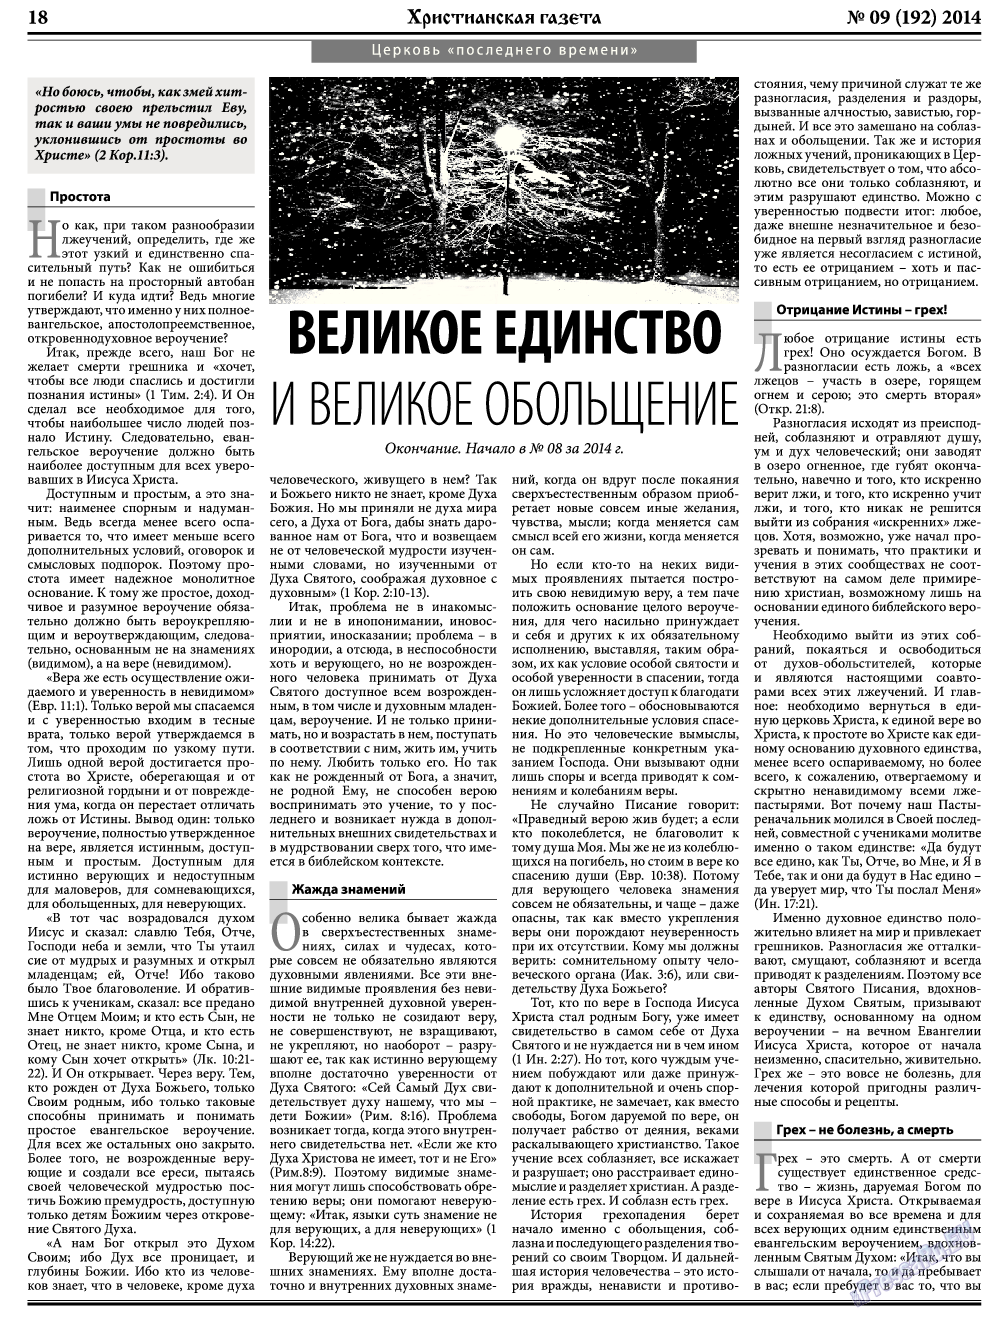 Христианская газета, газета. 2014 №9 стр.26